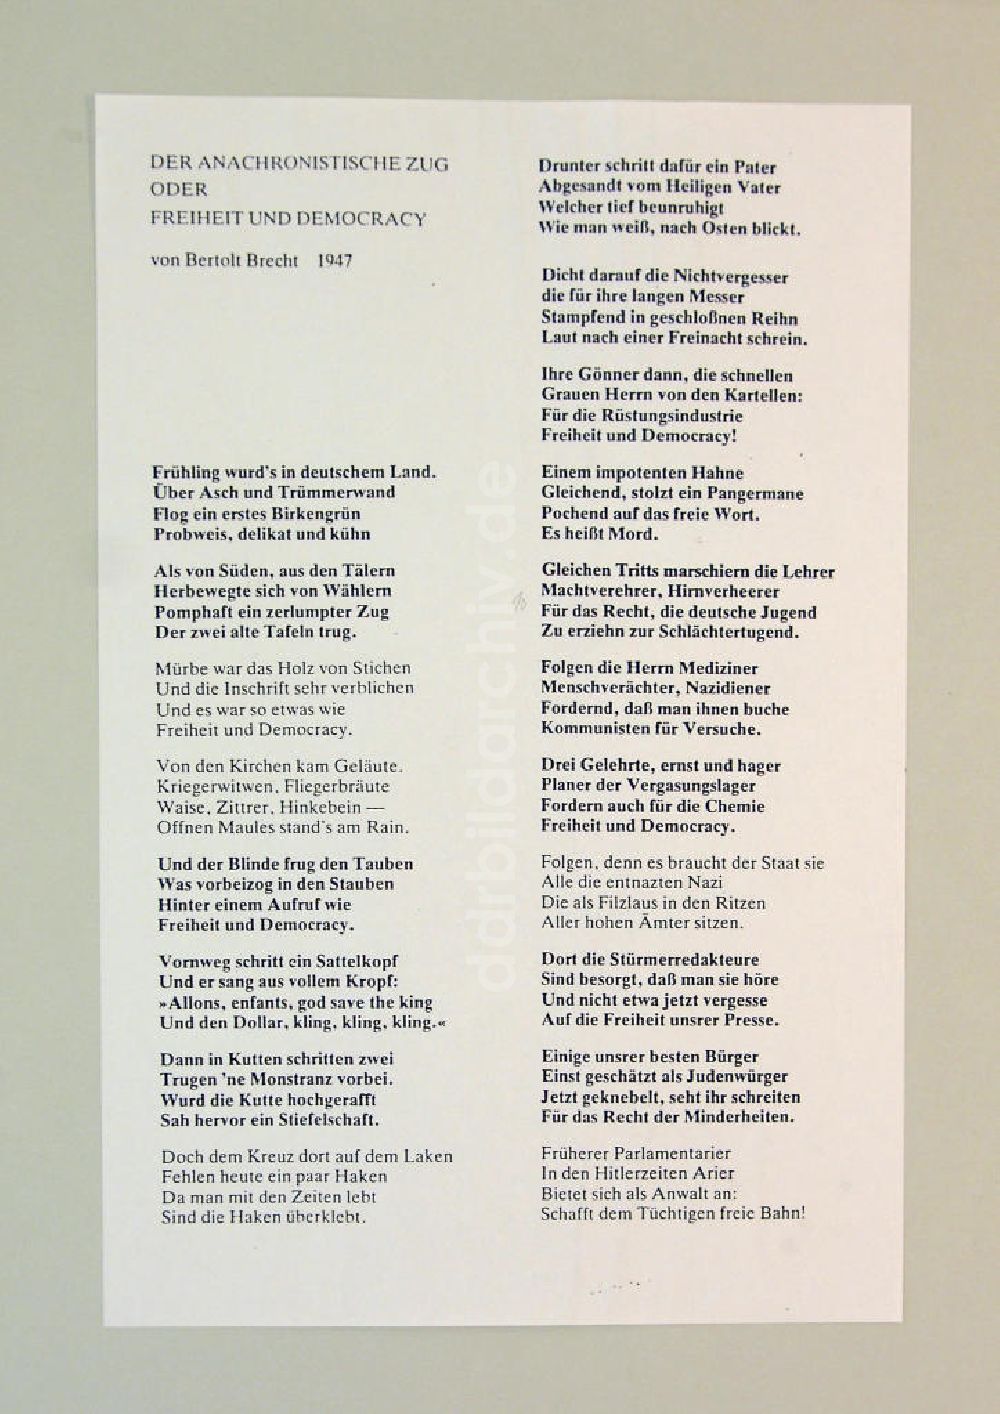 DDR-Fotoarchiv: Berlin - Gedicht Der Anachronistische Zug oder Freiheit und Democracy von Bertolt Brecht aus dem Jahr 1947, Strophe 1-19